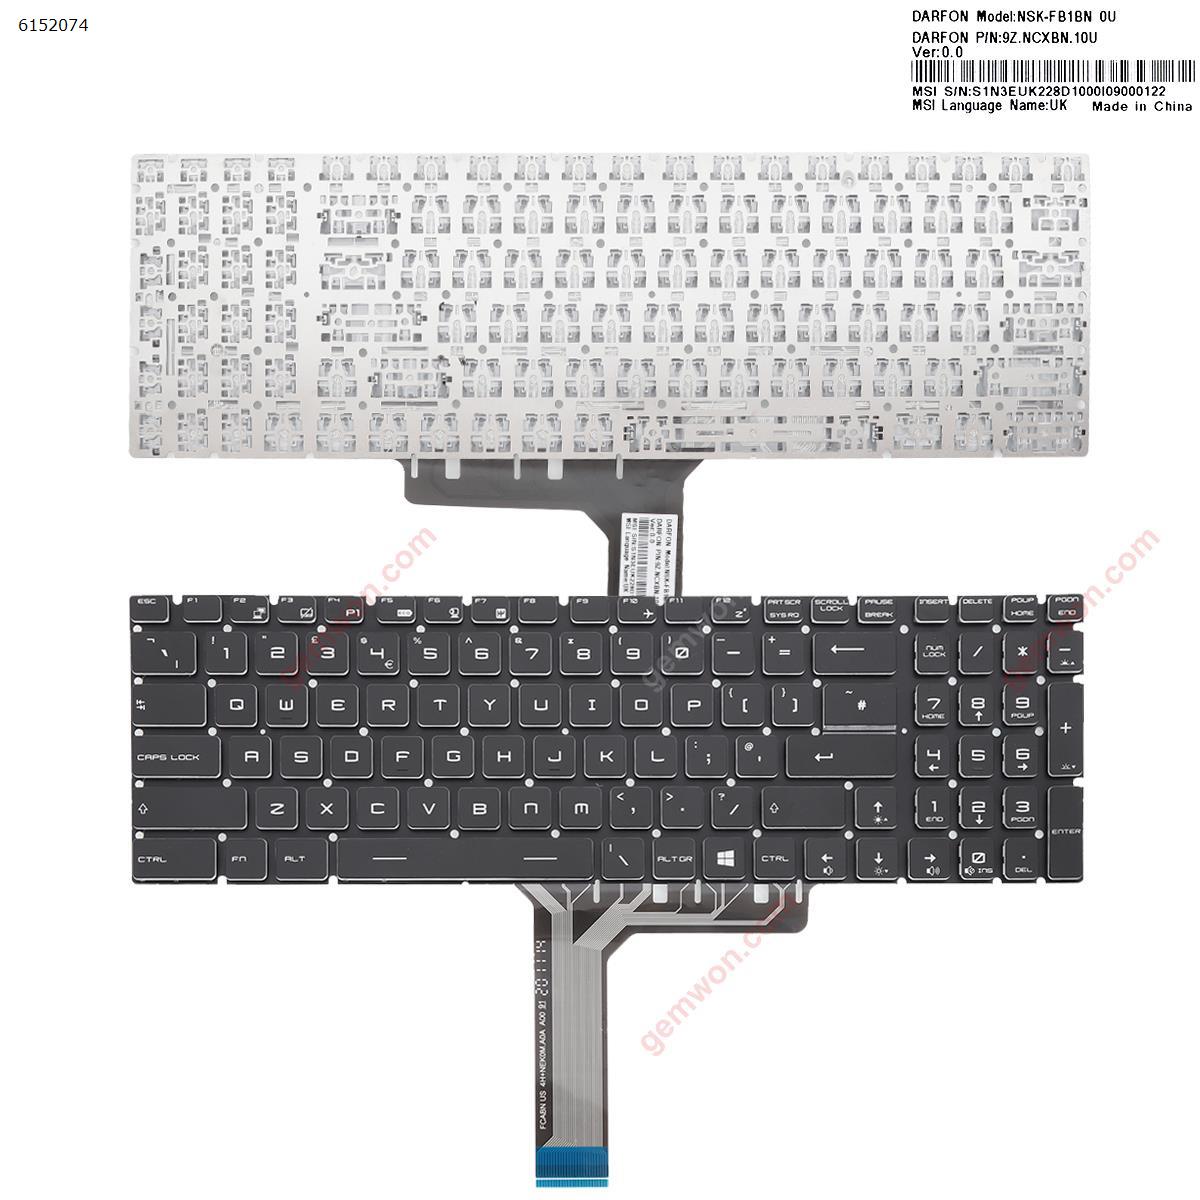 Vollfarbige Tastatur mit Hintergrundbeleuchtung speziell für das MSI GS60 GS70 GT72 GL62 GL72 Notebook entwickelt Wendry Keyboard Ersatzteile